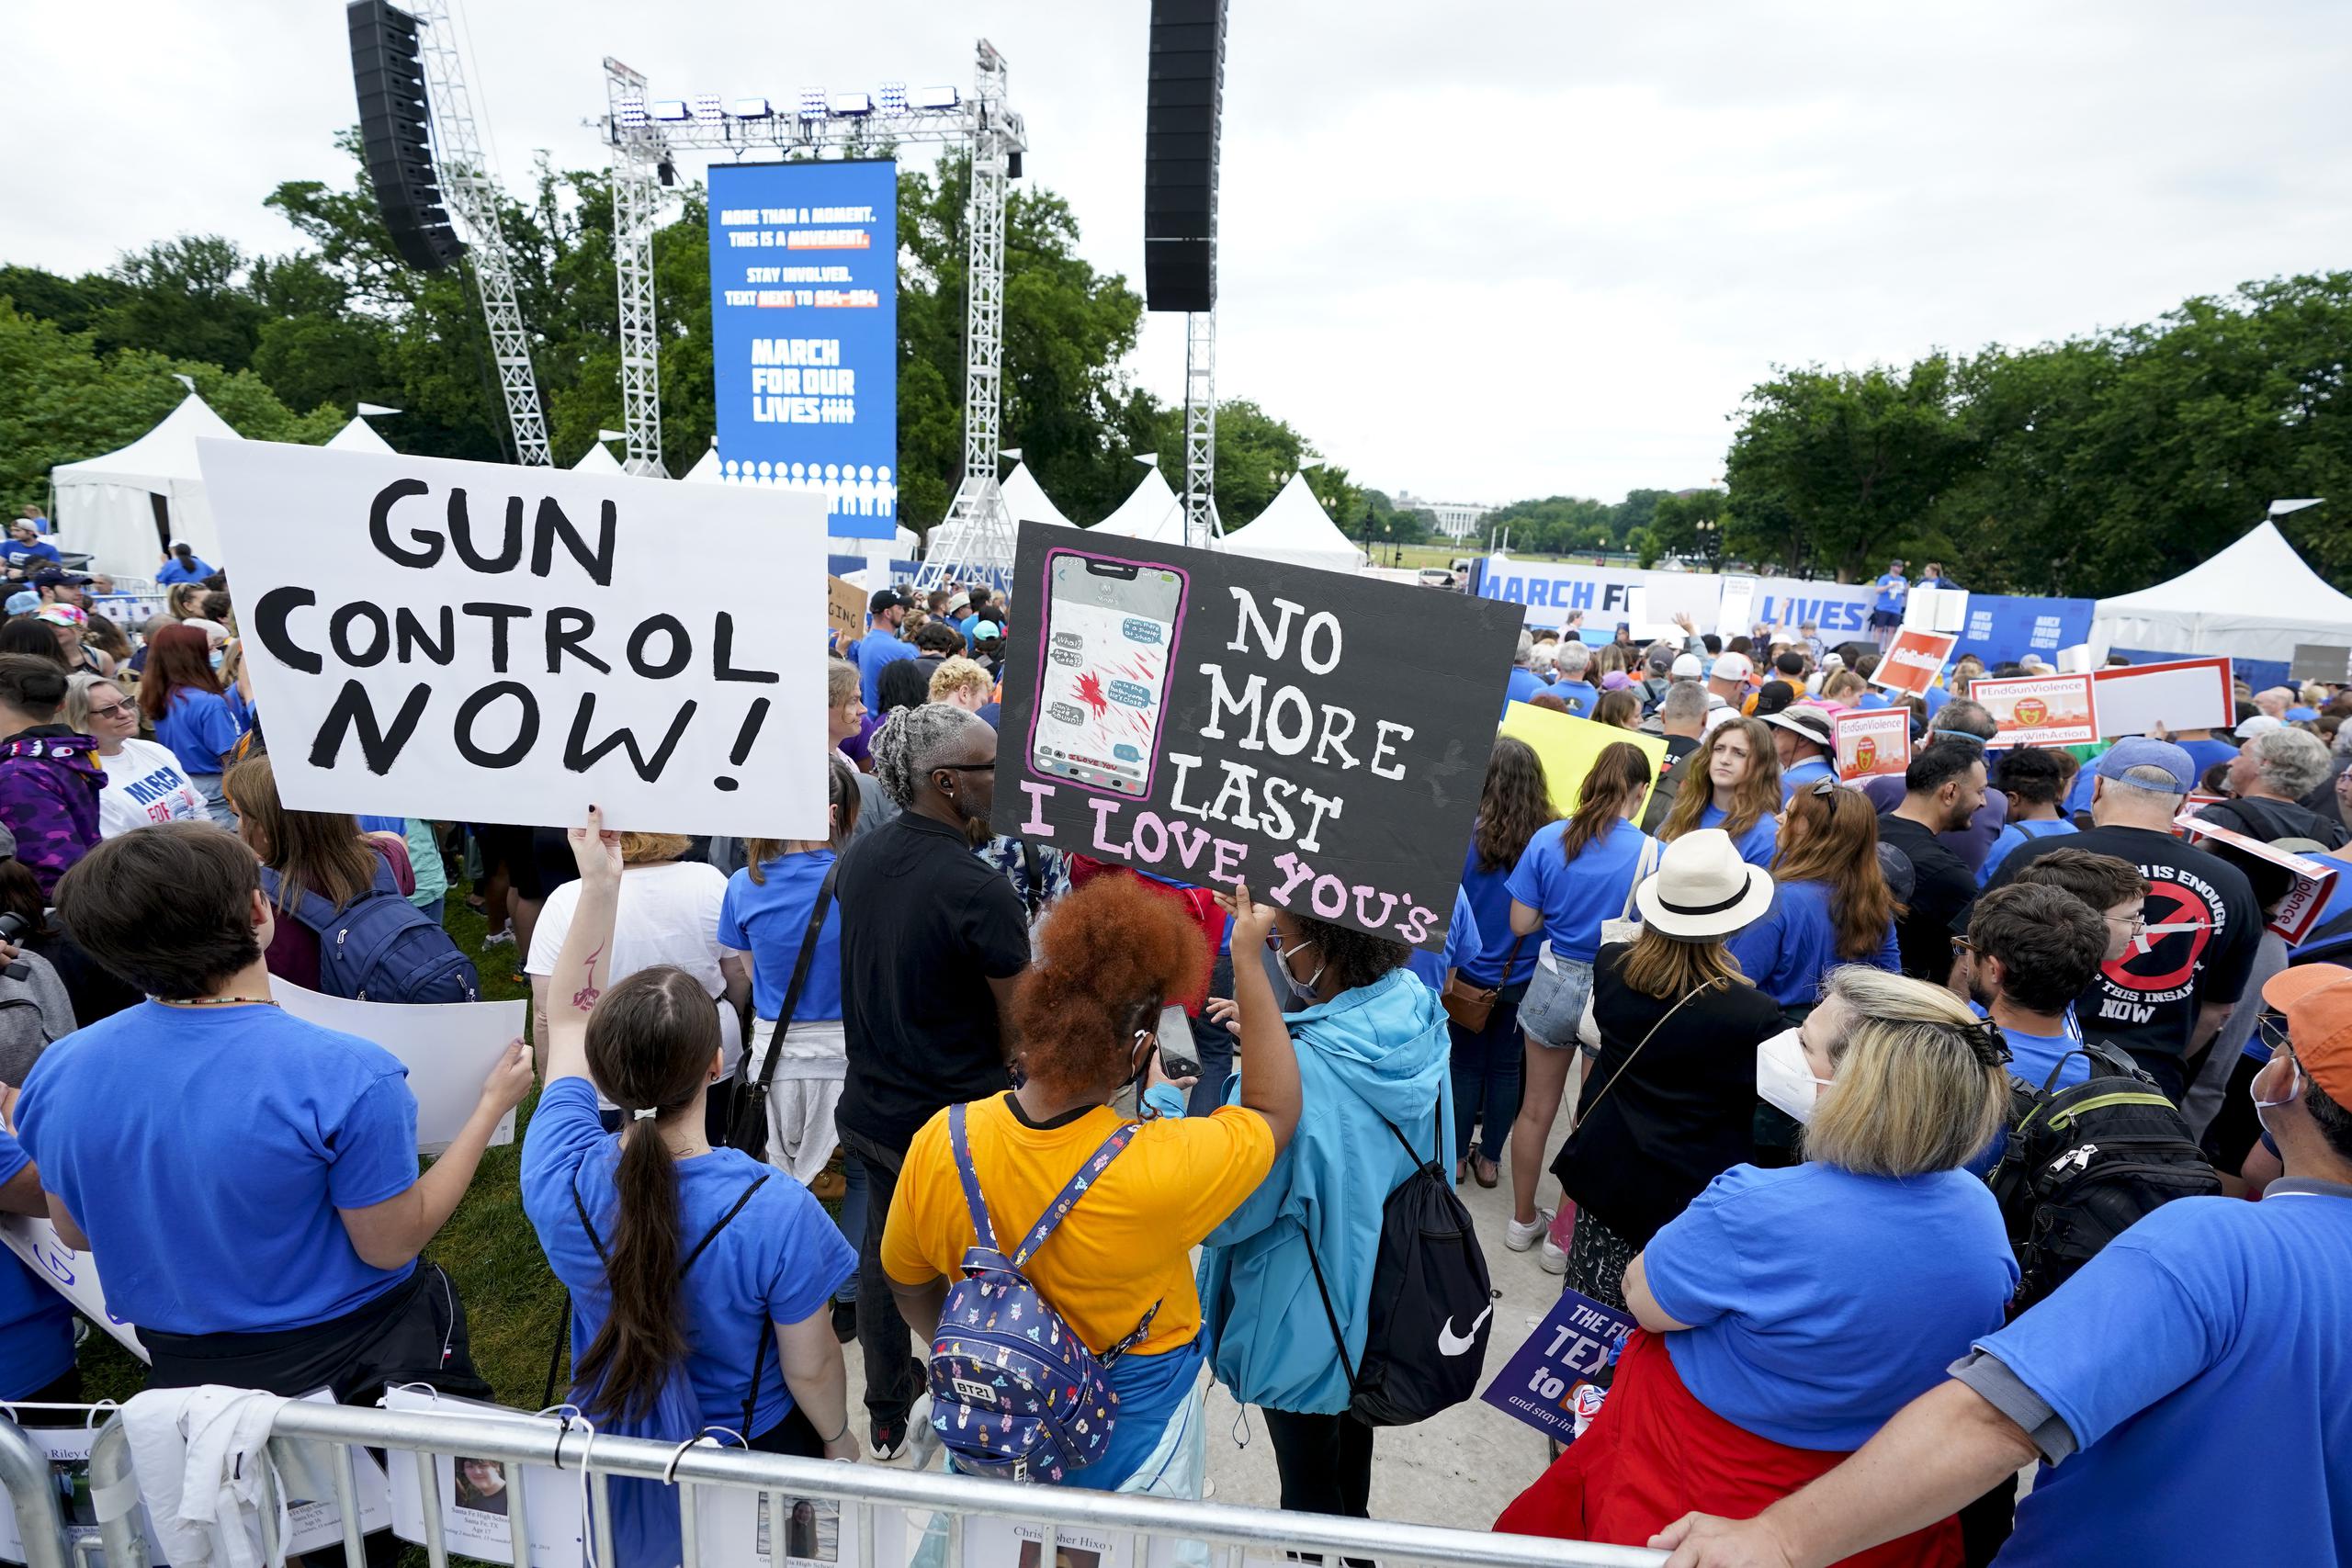 Segunda manifestación March for Our Lives en búsqueda de mayor control de armas el sábado 11 de junio de 2022 en Washington. La manifestación es la sucesora de la marcha de 2018 organizada por estudiantes que protestaban después del tiroteo masivo en una escuela secundaria en Parkland, Florida. (AP Photo/Jose Luis Magana)